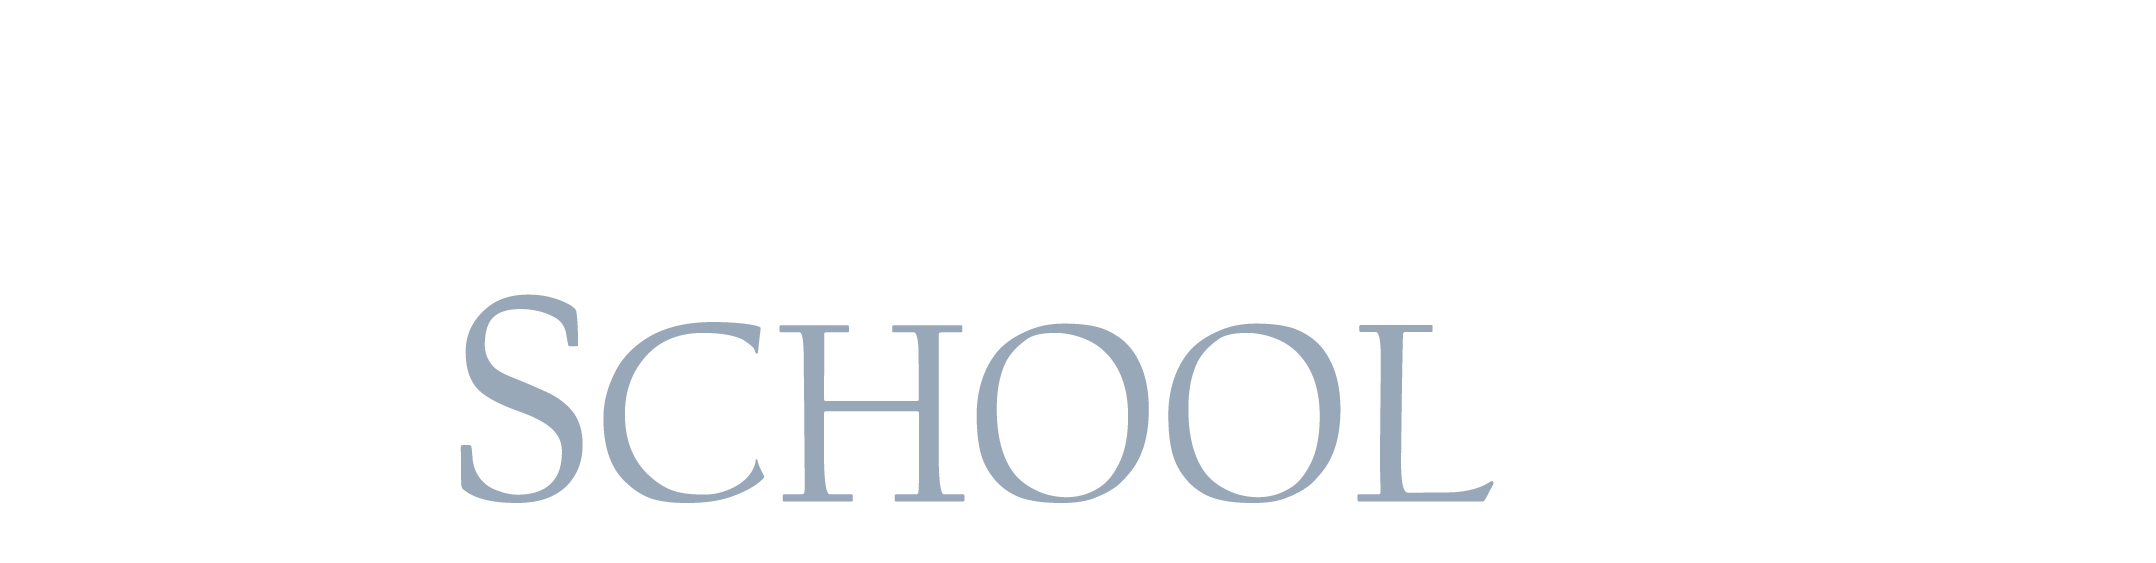 Beechwood School Logo